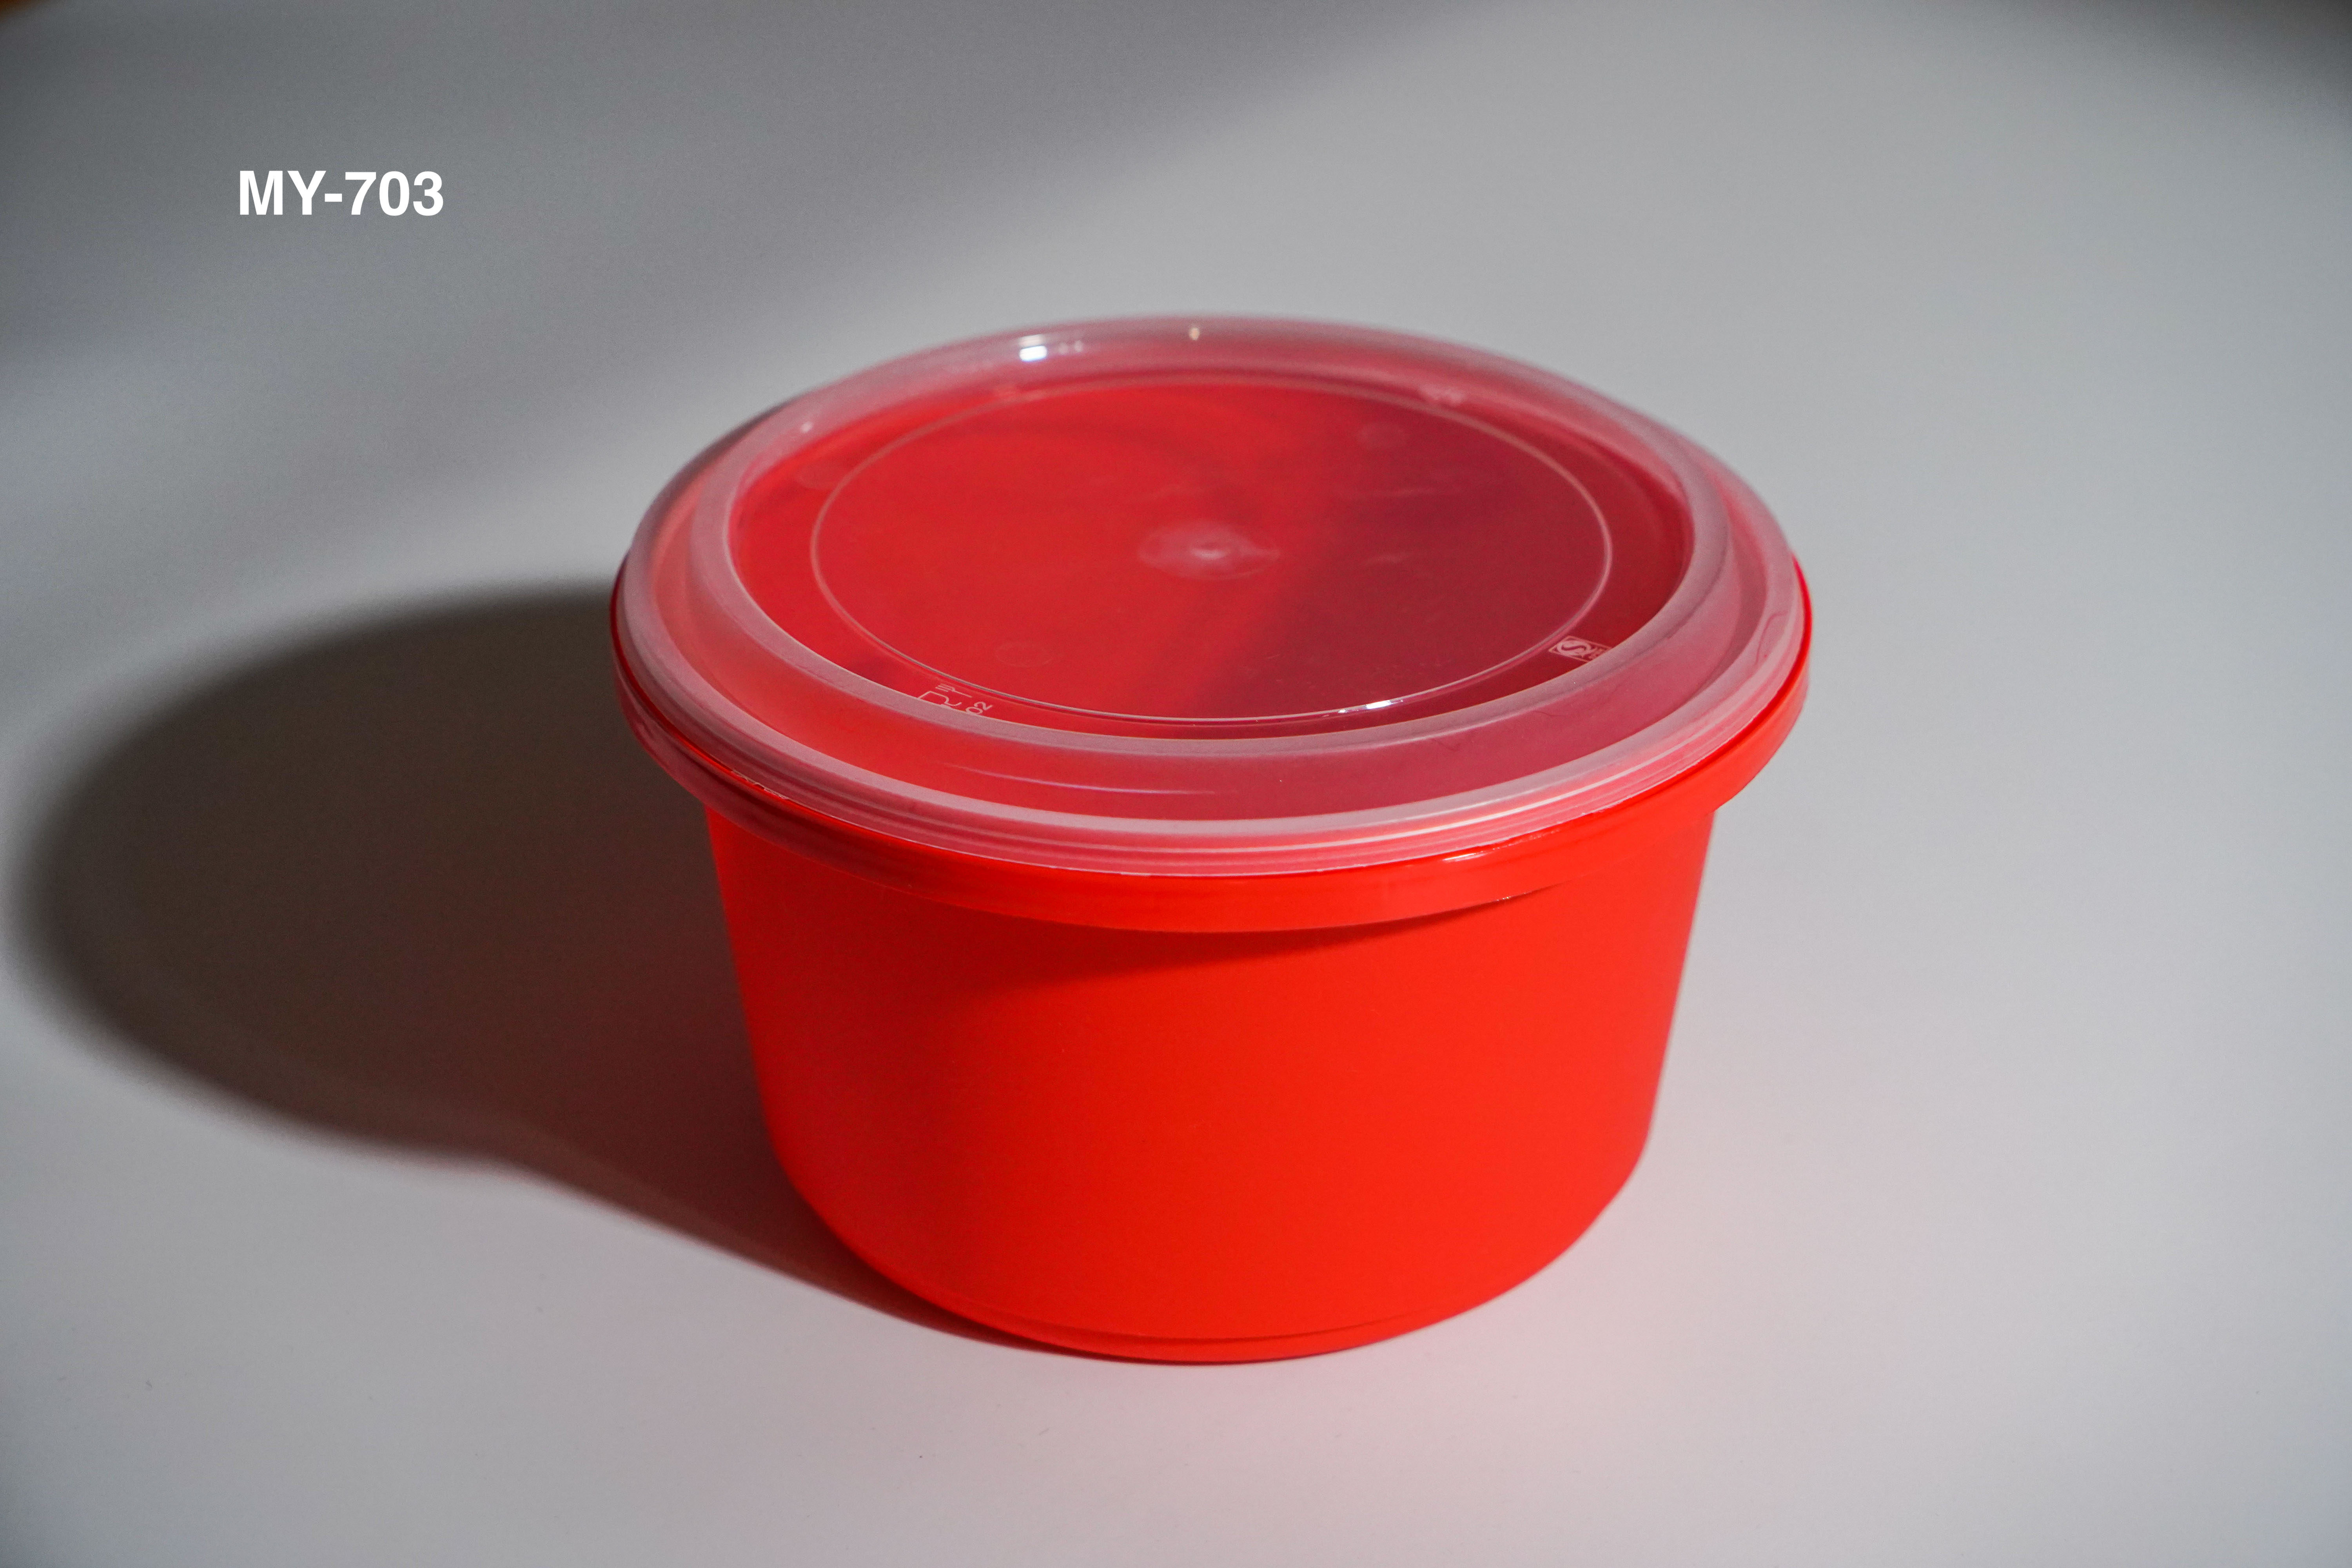 Najlepsze plastikowe pojemniki do przechowywania żywności według naszych testów eksperckich/